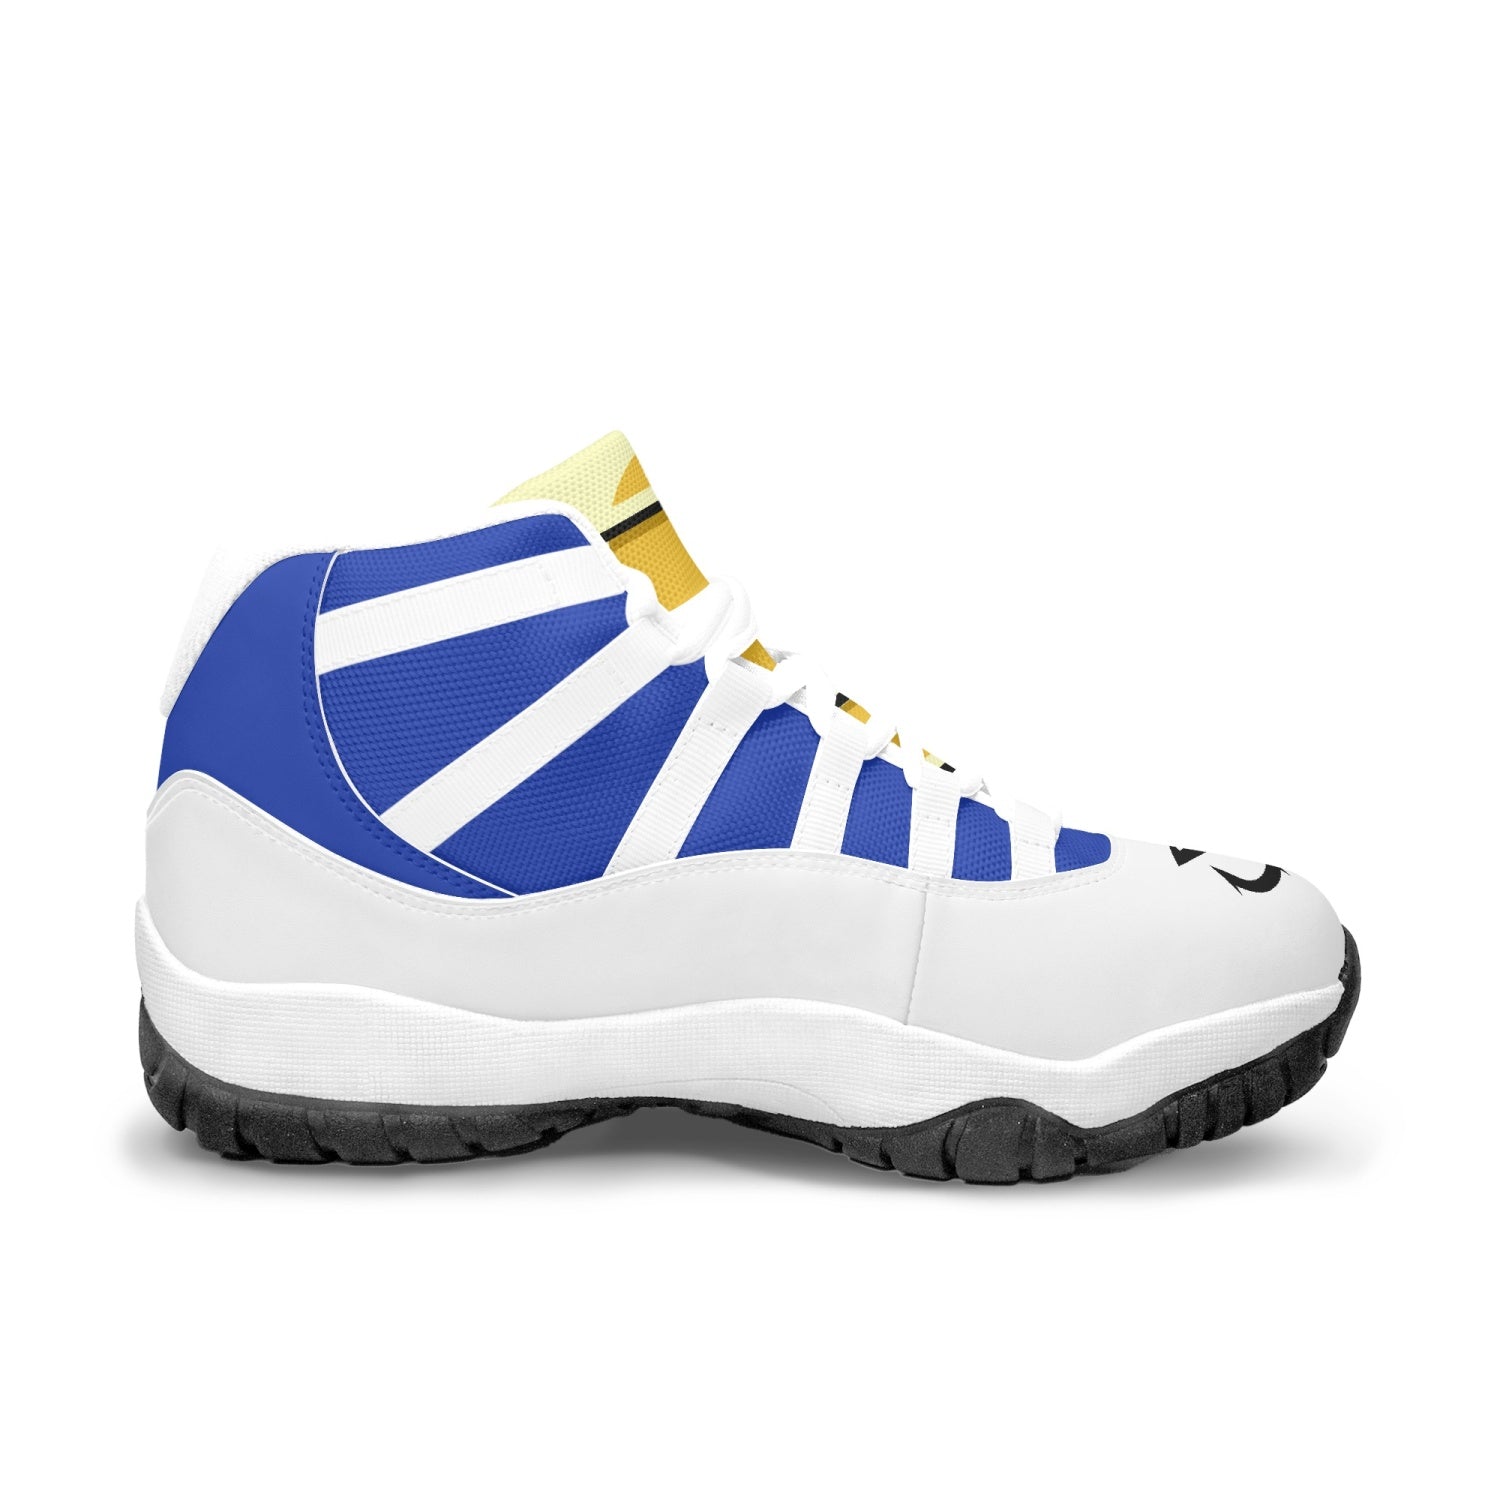 Vegeta Dragon Ball Z AJ11 Basketball Shoes-White-Men-US5/EU38-Anime Shoe Shop